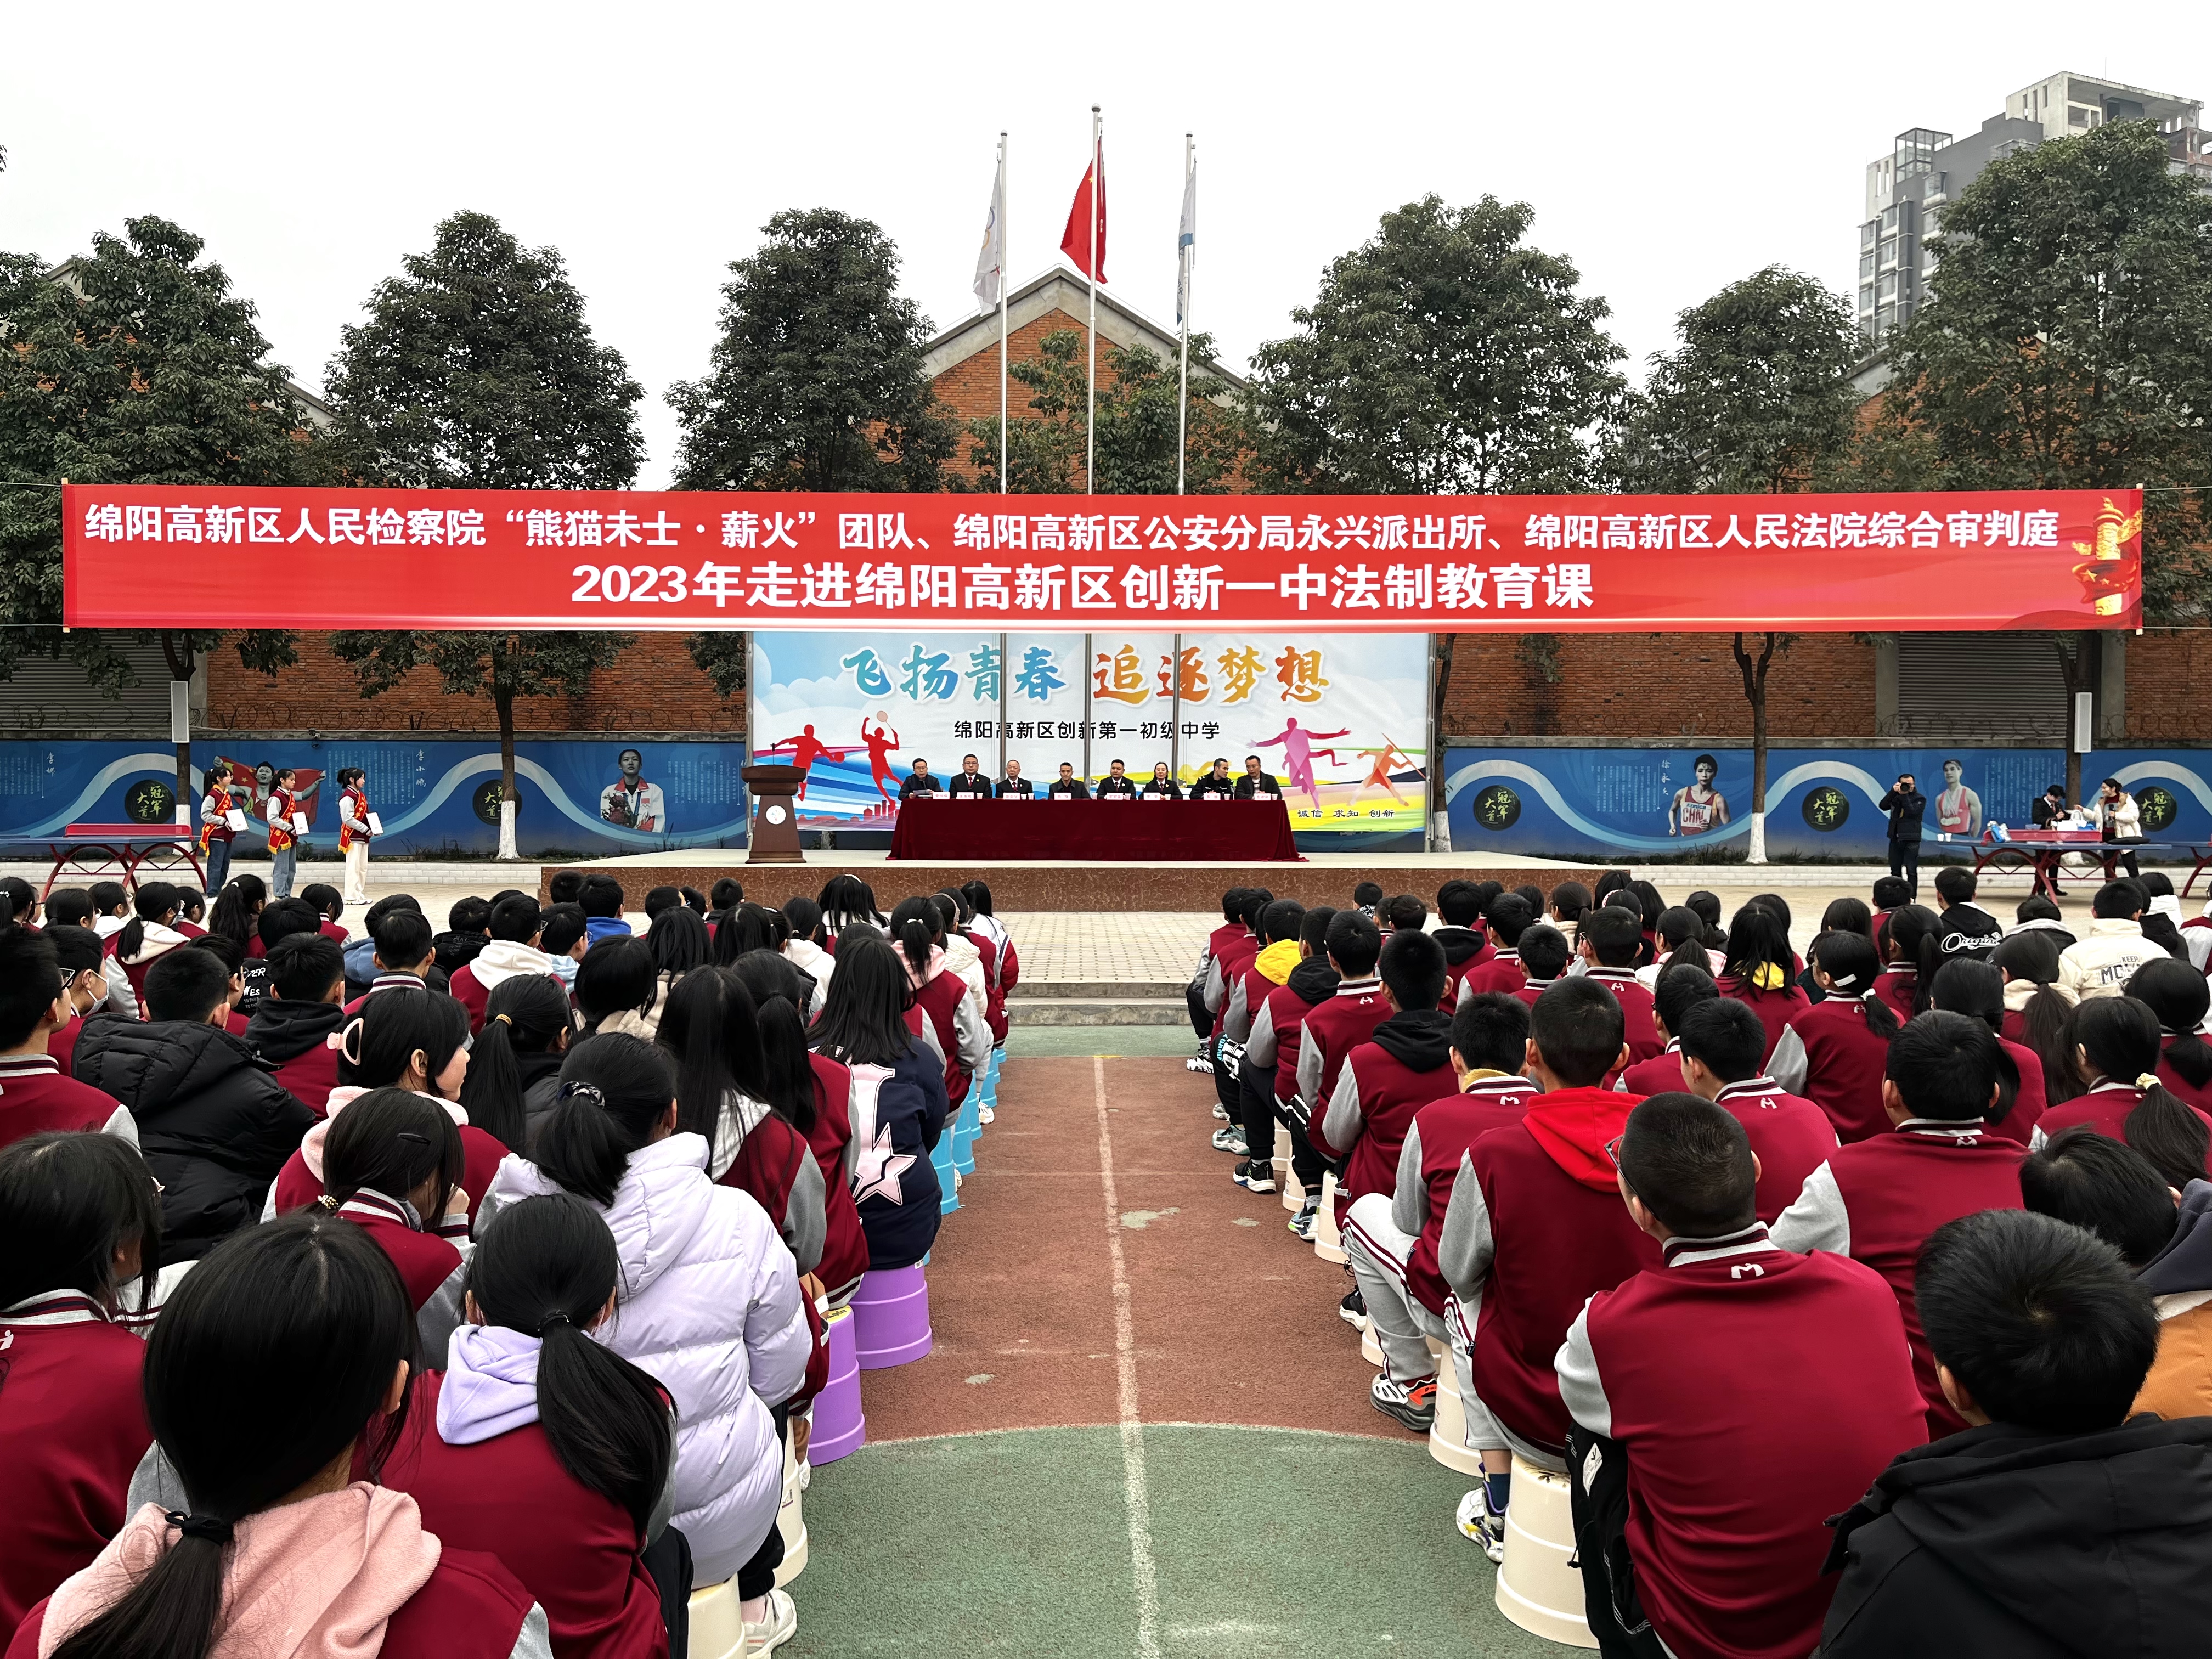 “熊猫未士·薪火”团队进校园开展预防未成年人性侵“法治进校